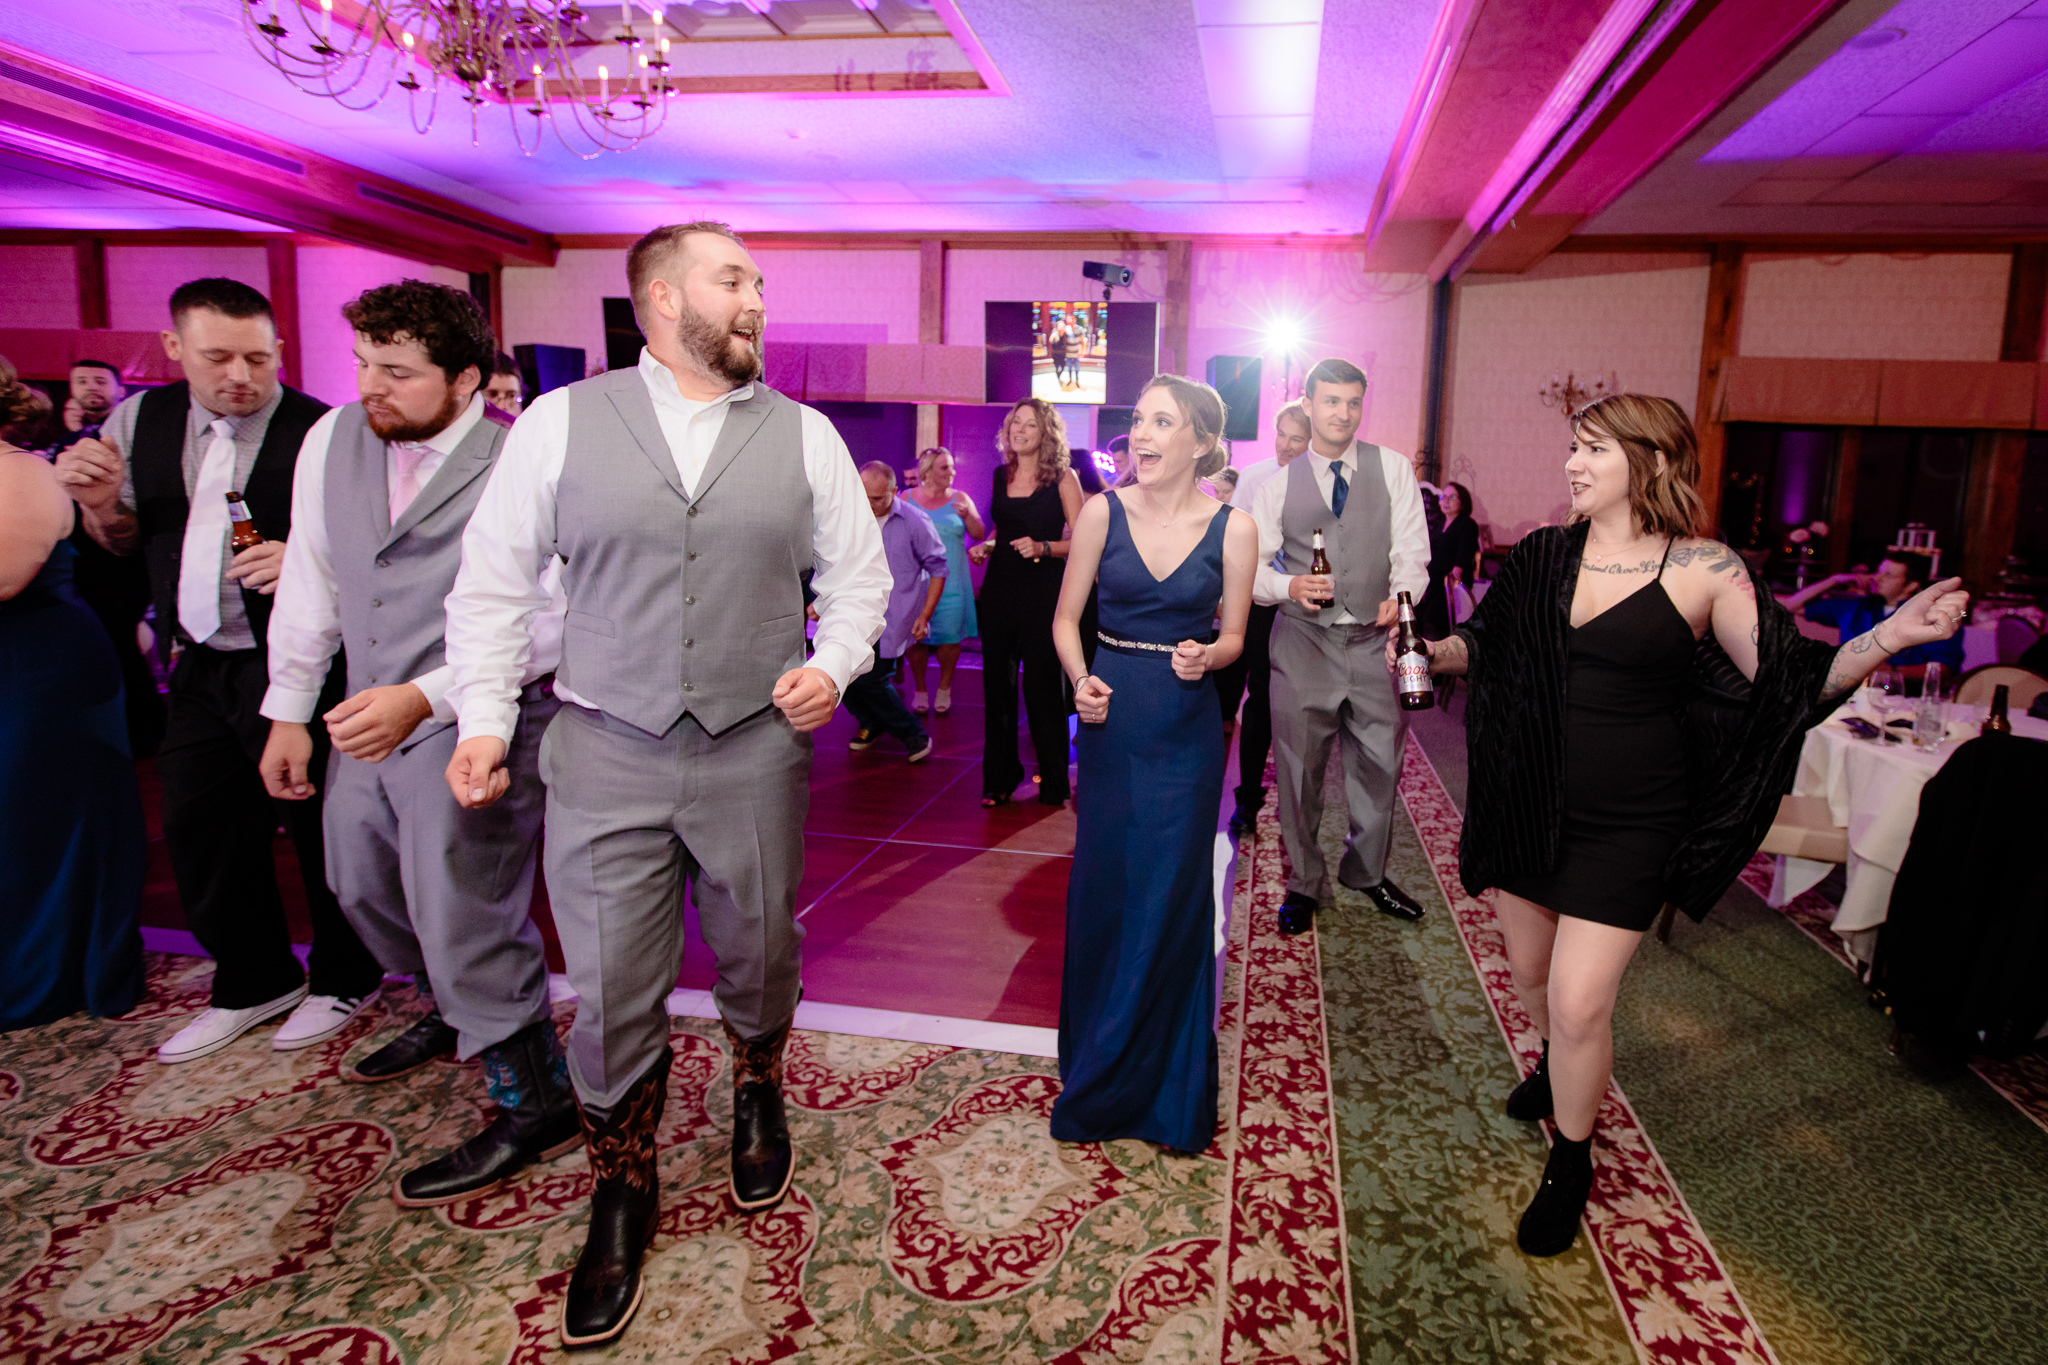 Guests do a line dance at an Oglebay wedding reception